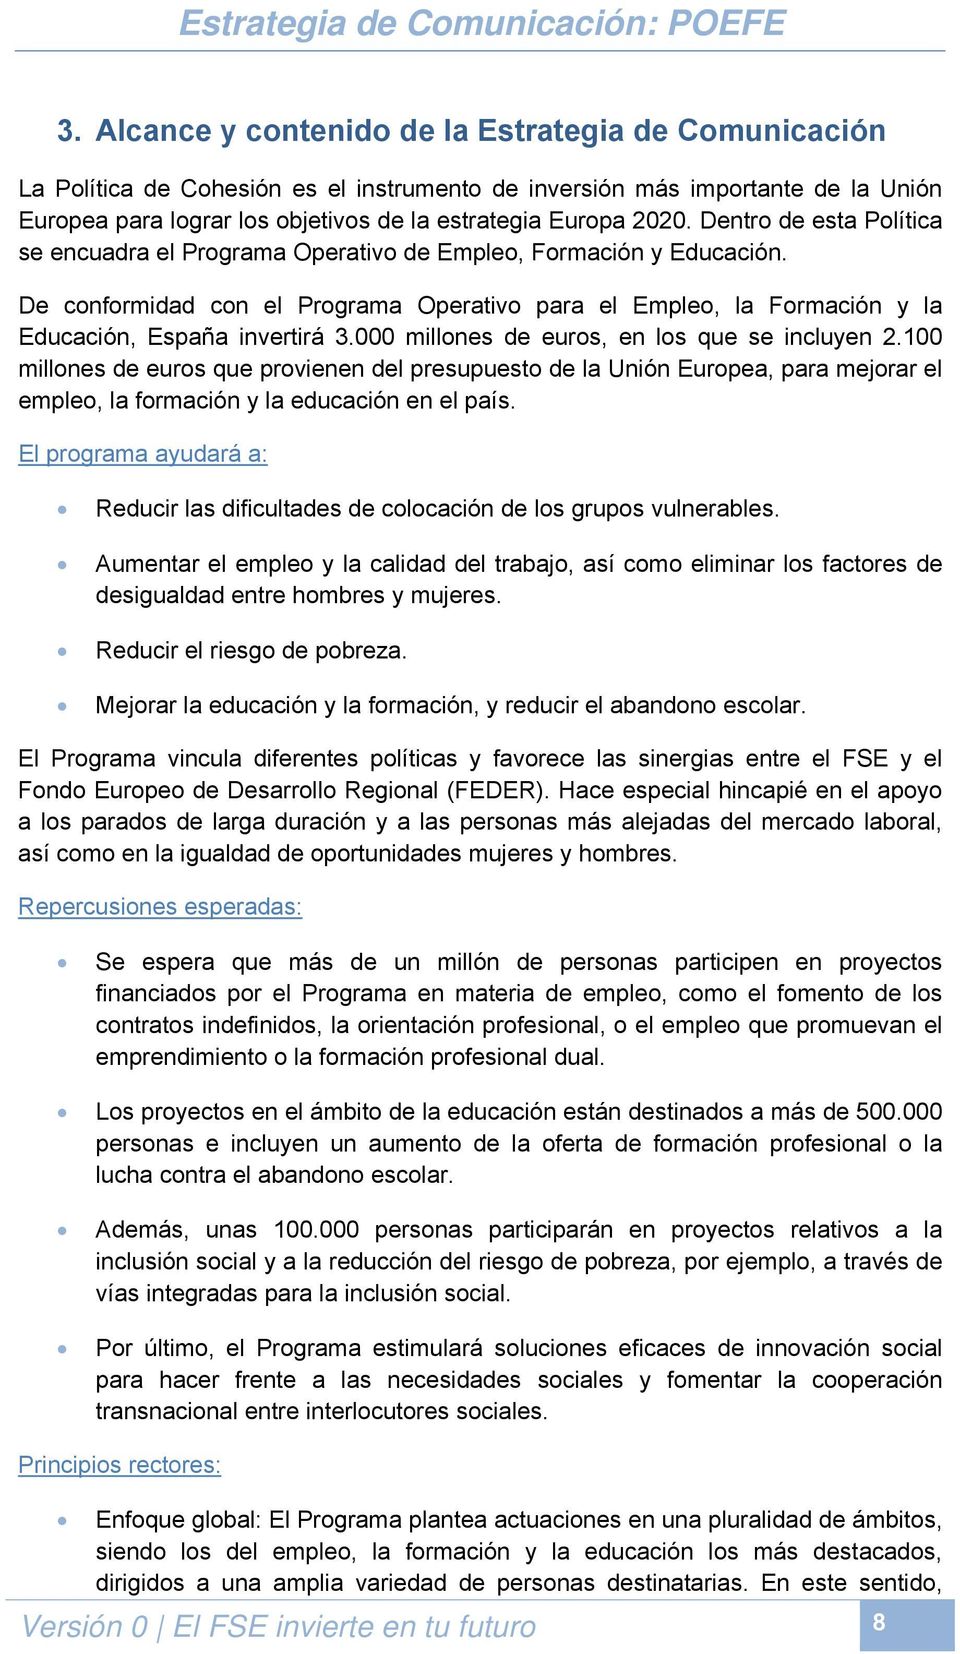 De conformidad con el Programa Operativo para el Empleo, la Formación y la Educación, España invertirá 3.000 millones de euros, en los que se incluyen 2.